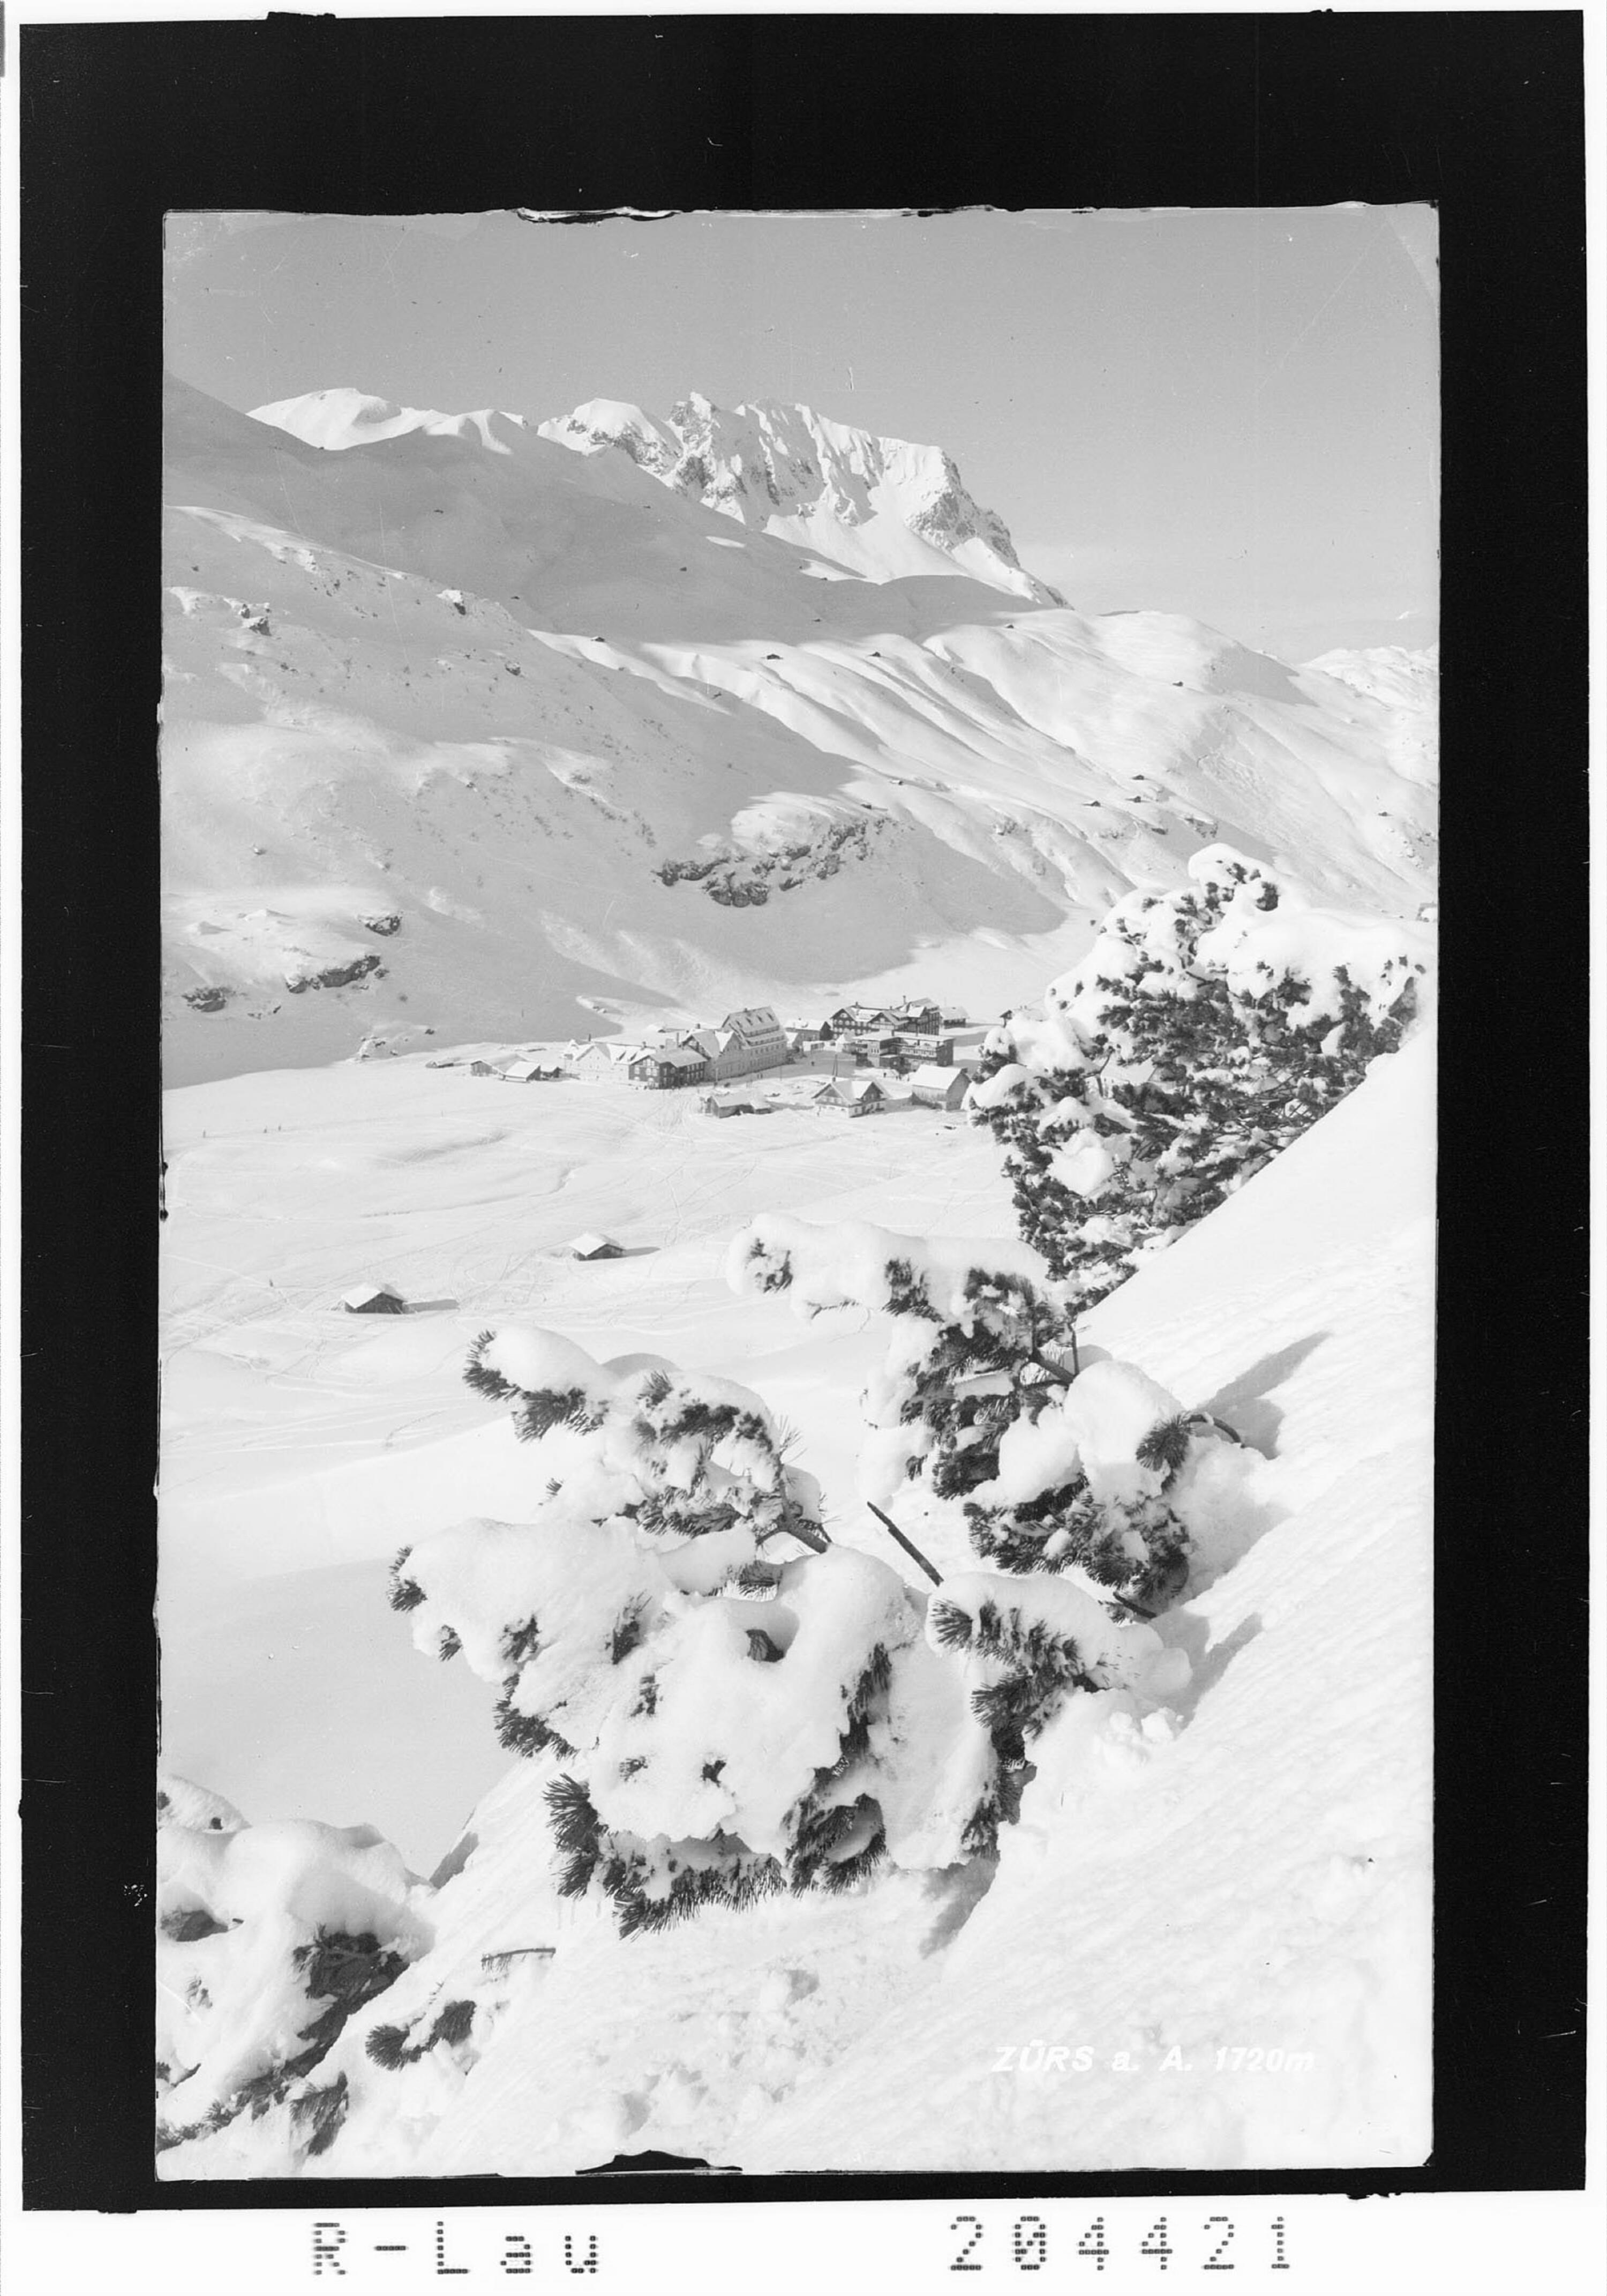 Zürs am Arlberg 1720 m></div>


    <hr>
    <div class=